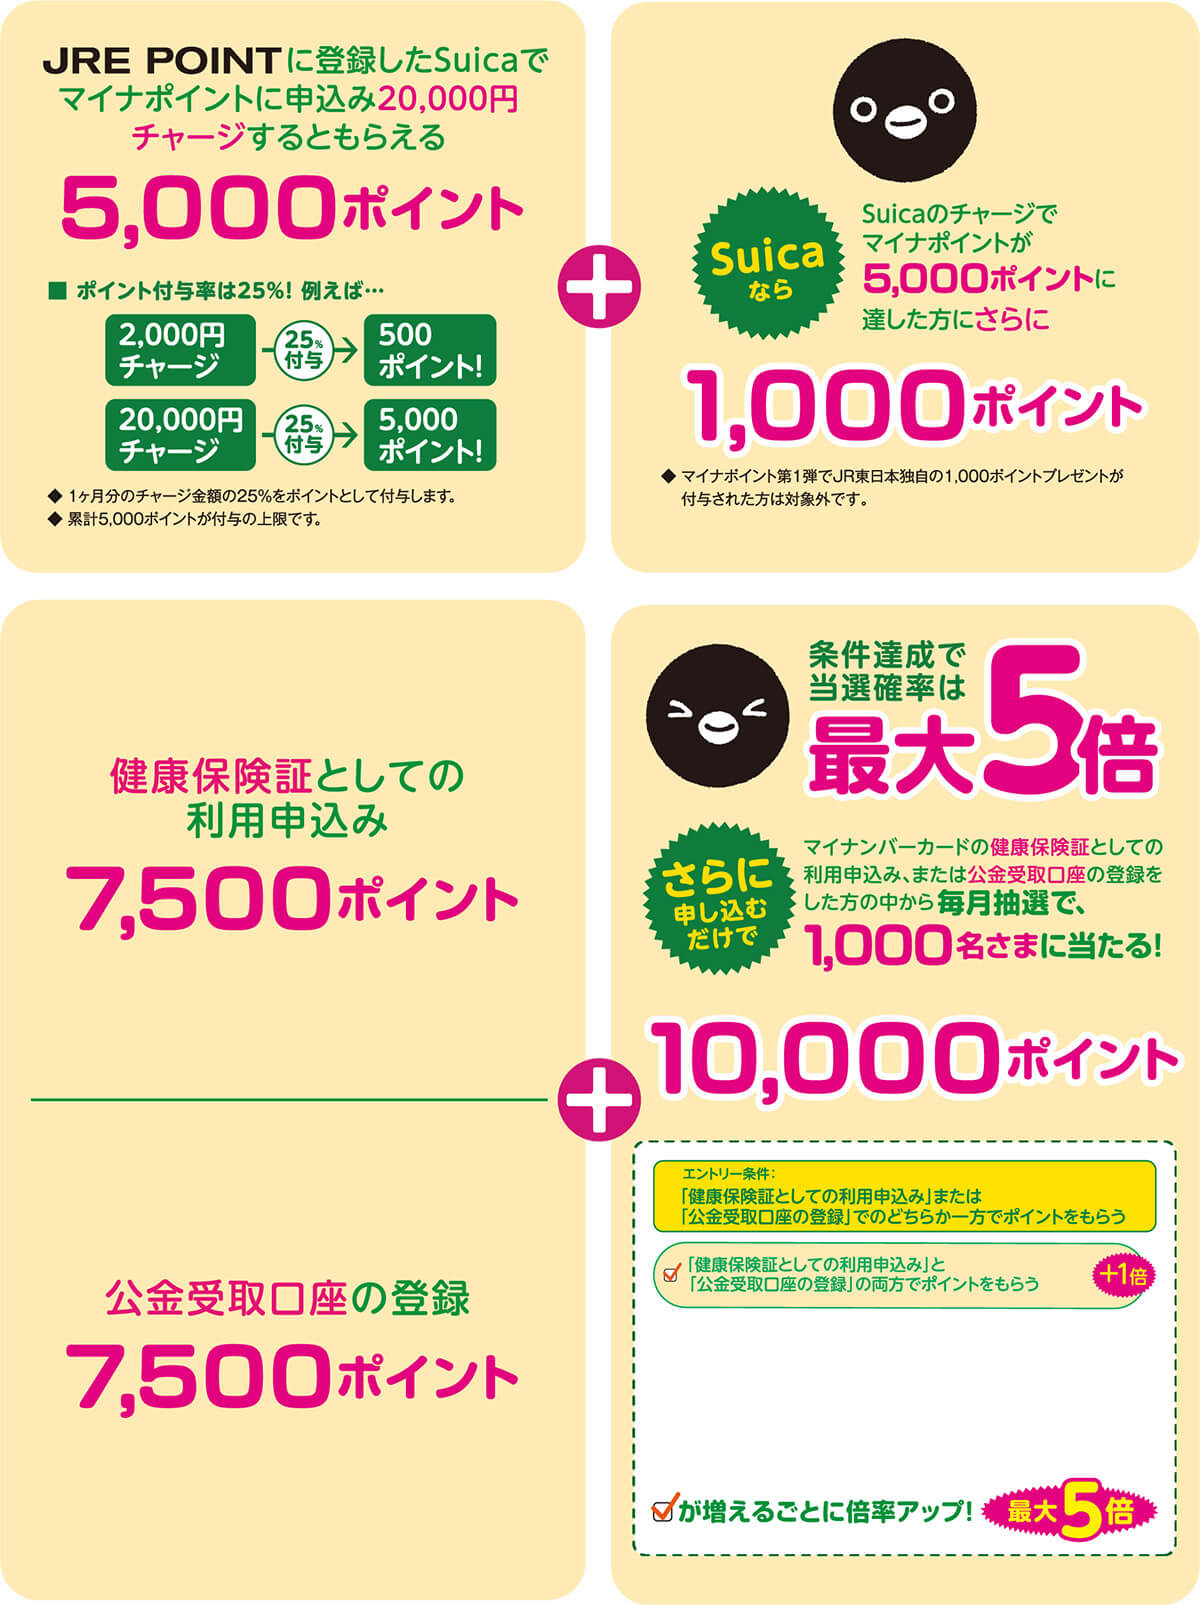 【Suica】2万円チャージでもれなく1,000pt、さらに抽選で毎月1,000人に1万ポイントが当たる